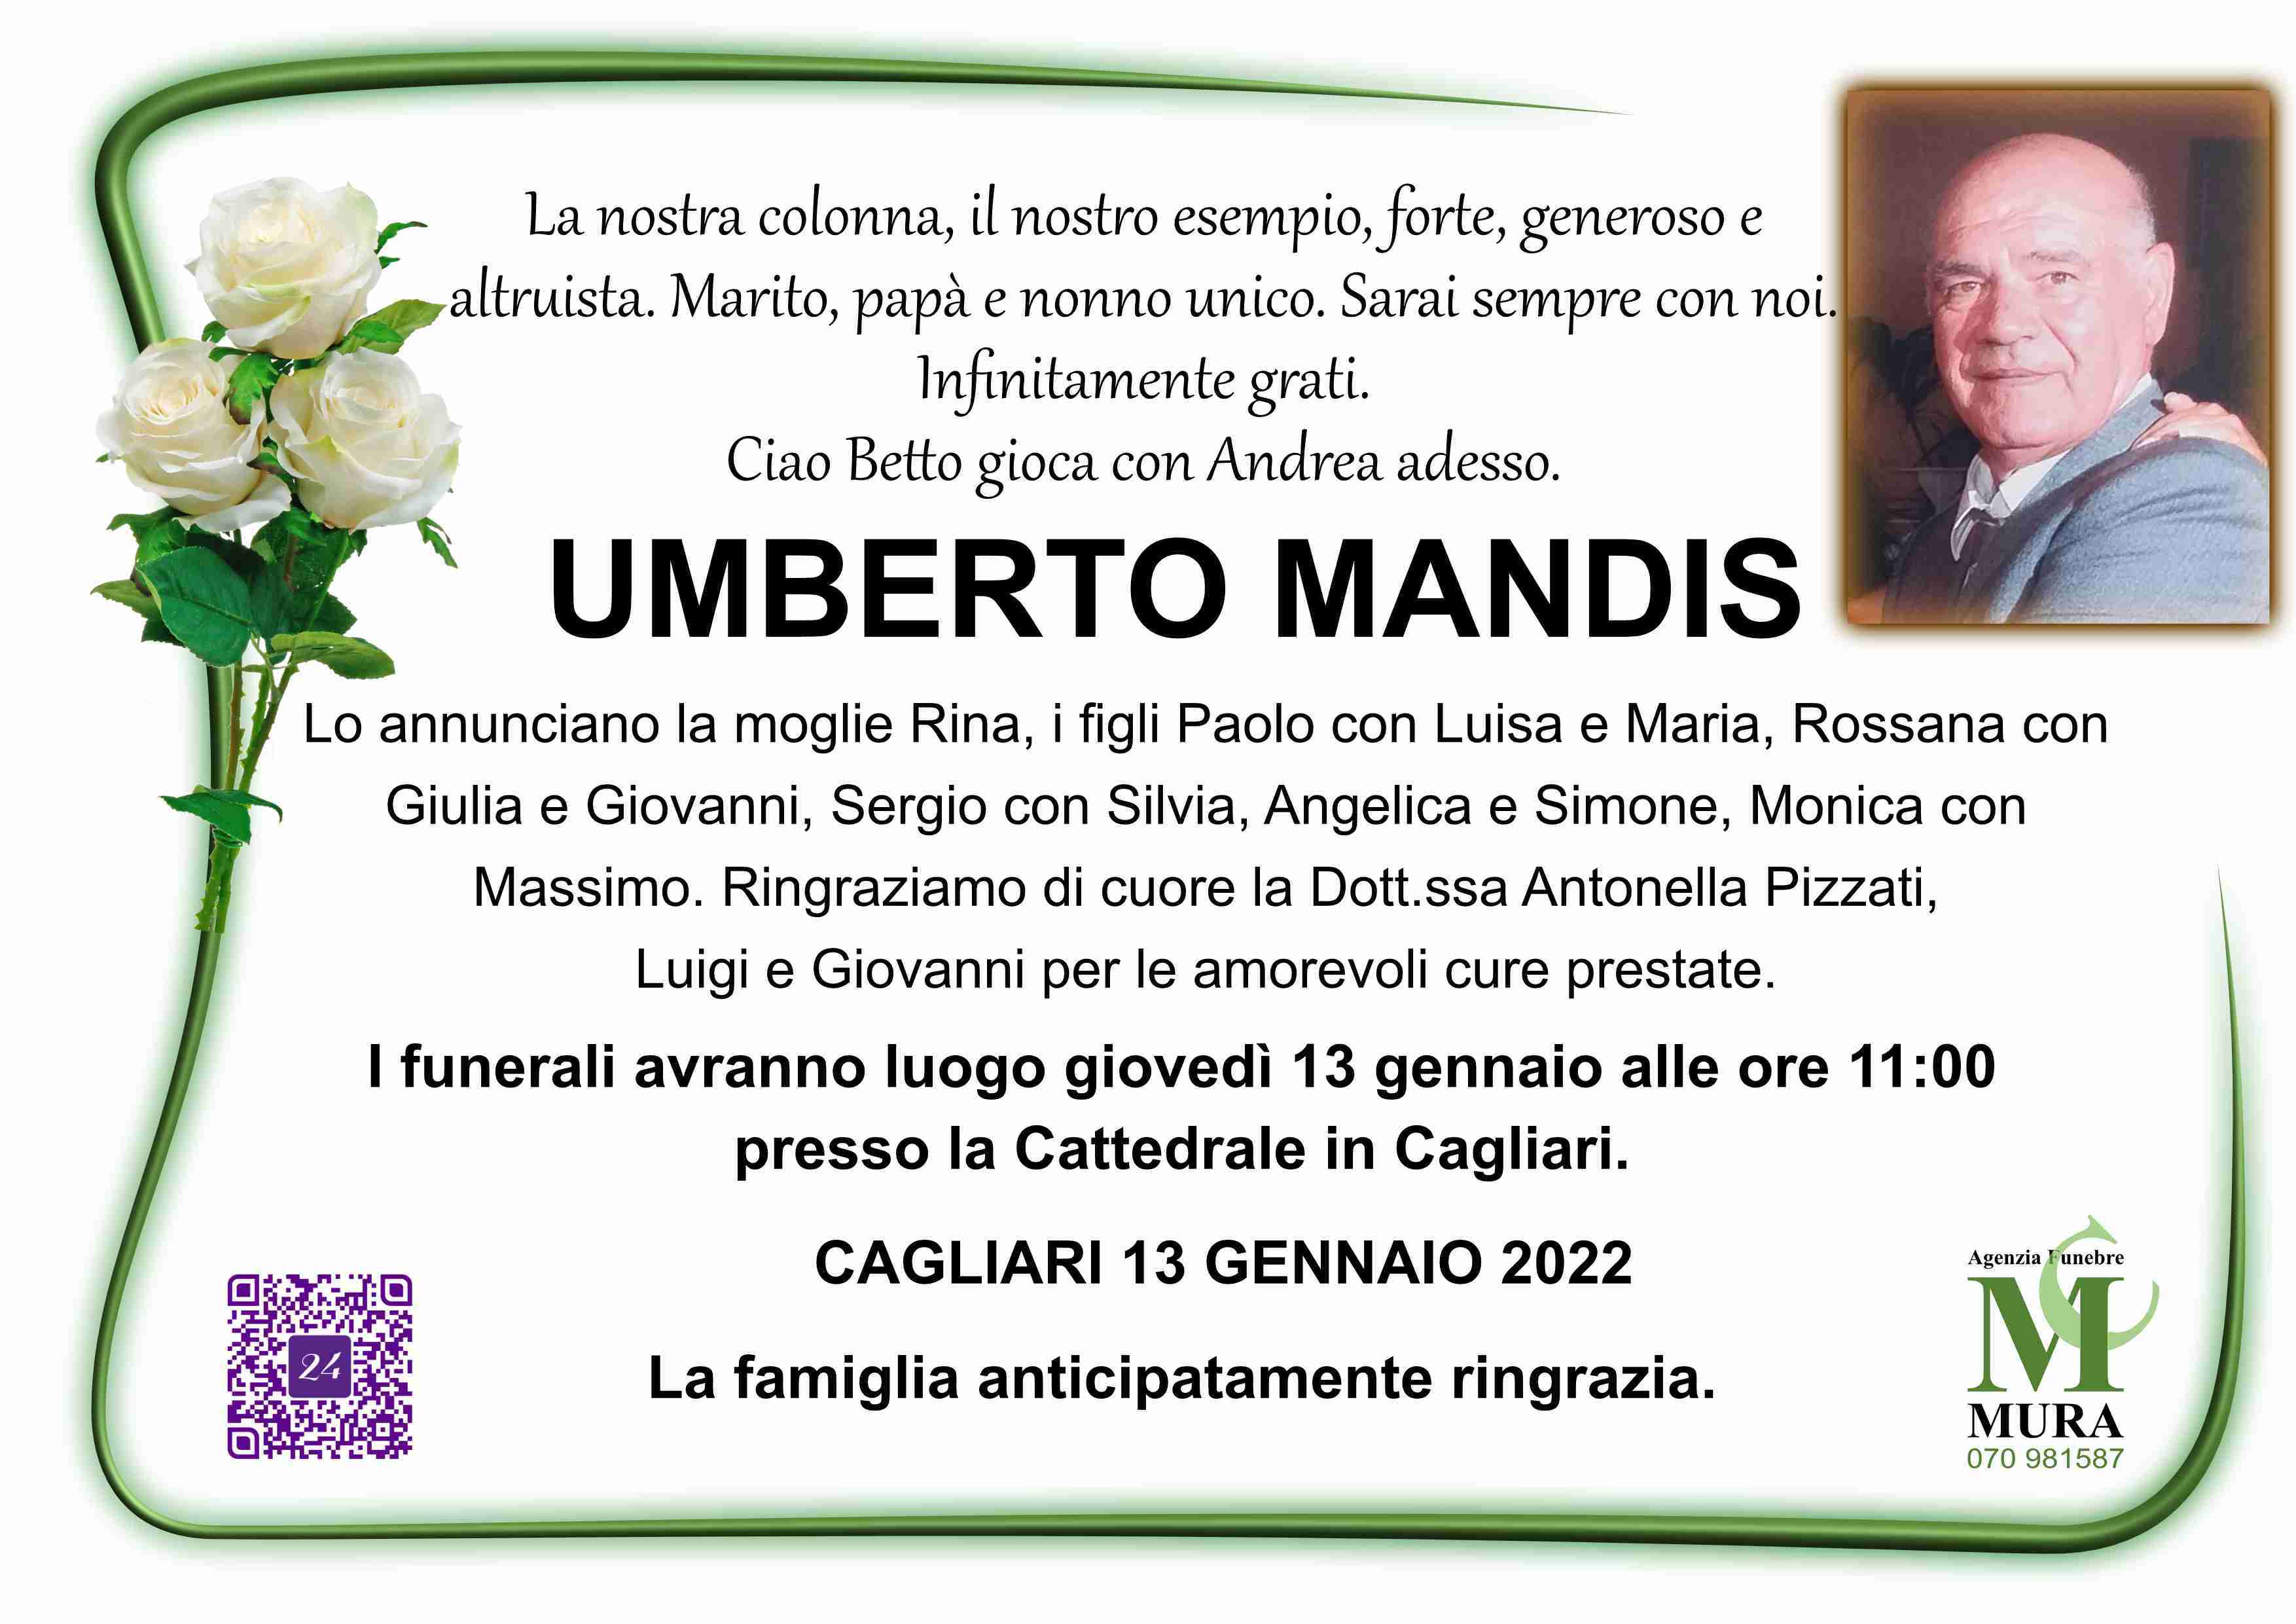 Umberto Mandis